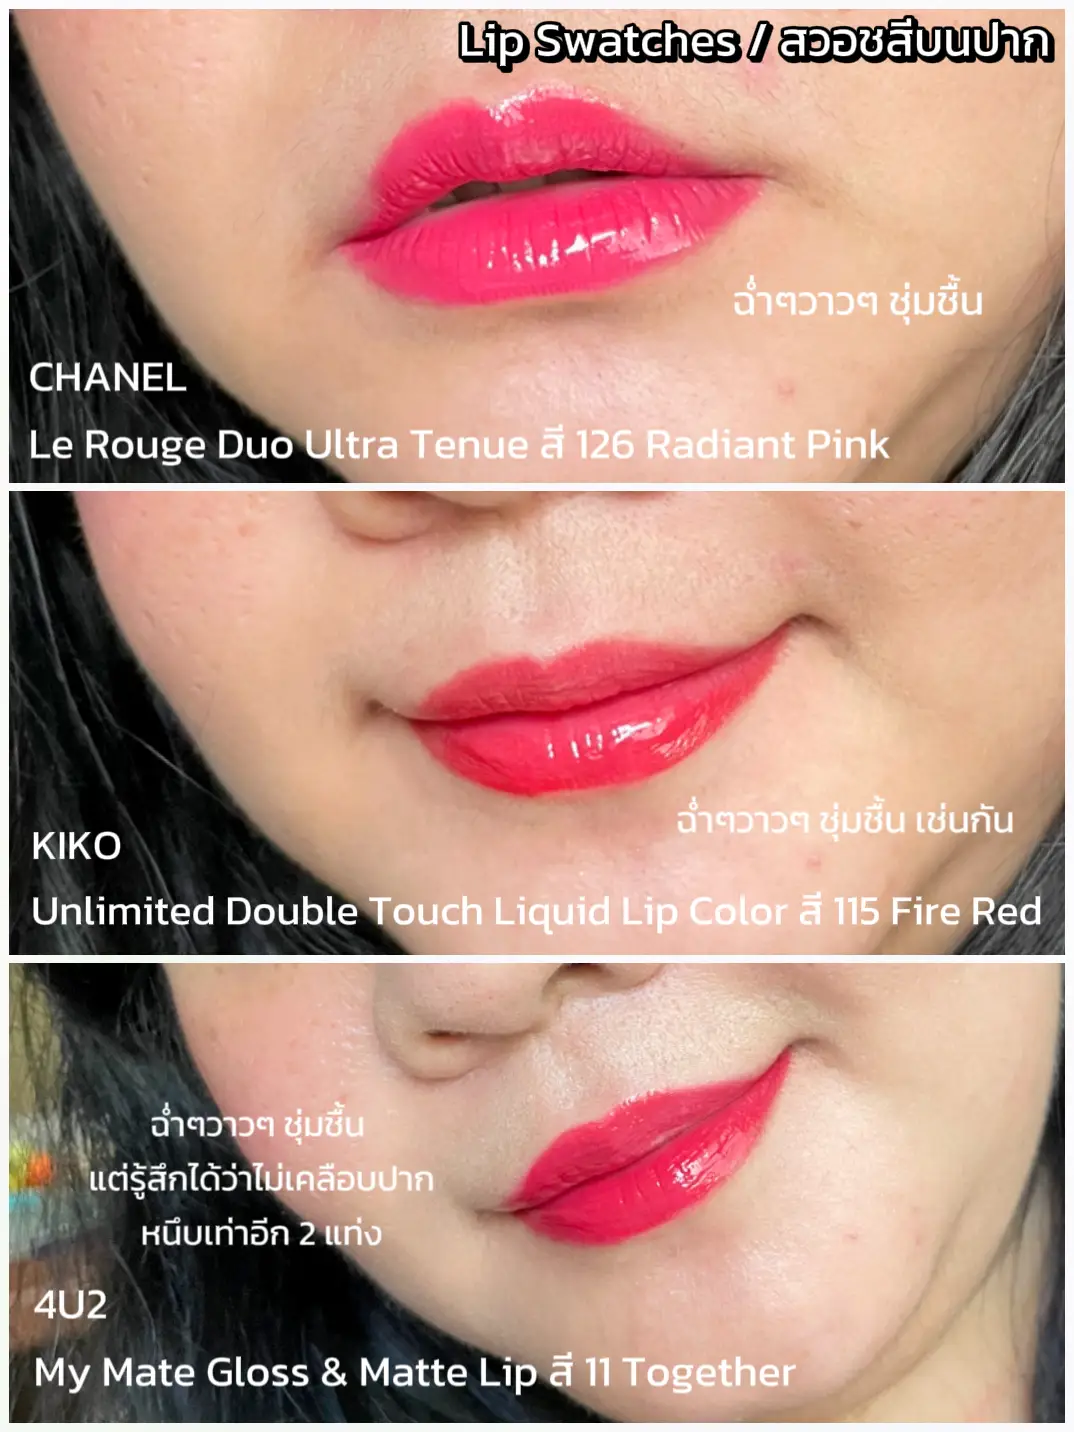 เปรียบเทียบ ลิป duo CHANEL vs KIKO vs 4U2 แบบละเอียด 👌, Galeri diposting  oleh lipstickfairy